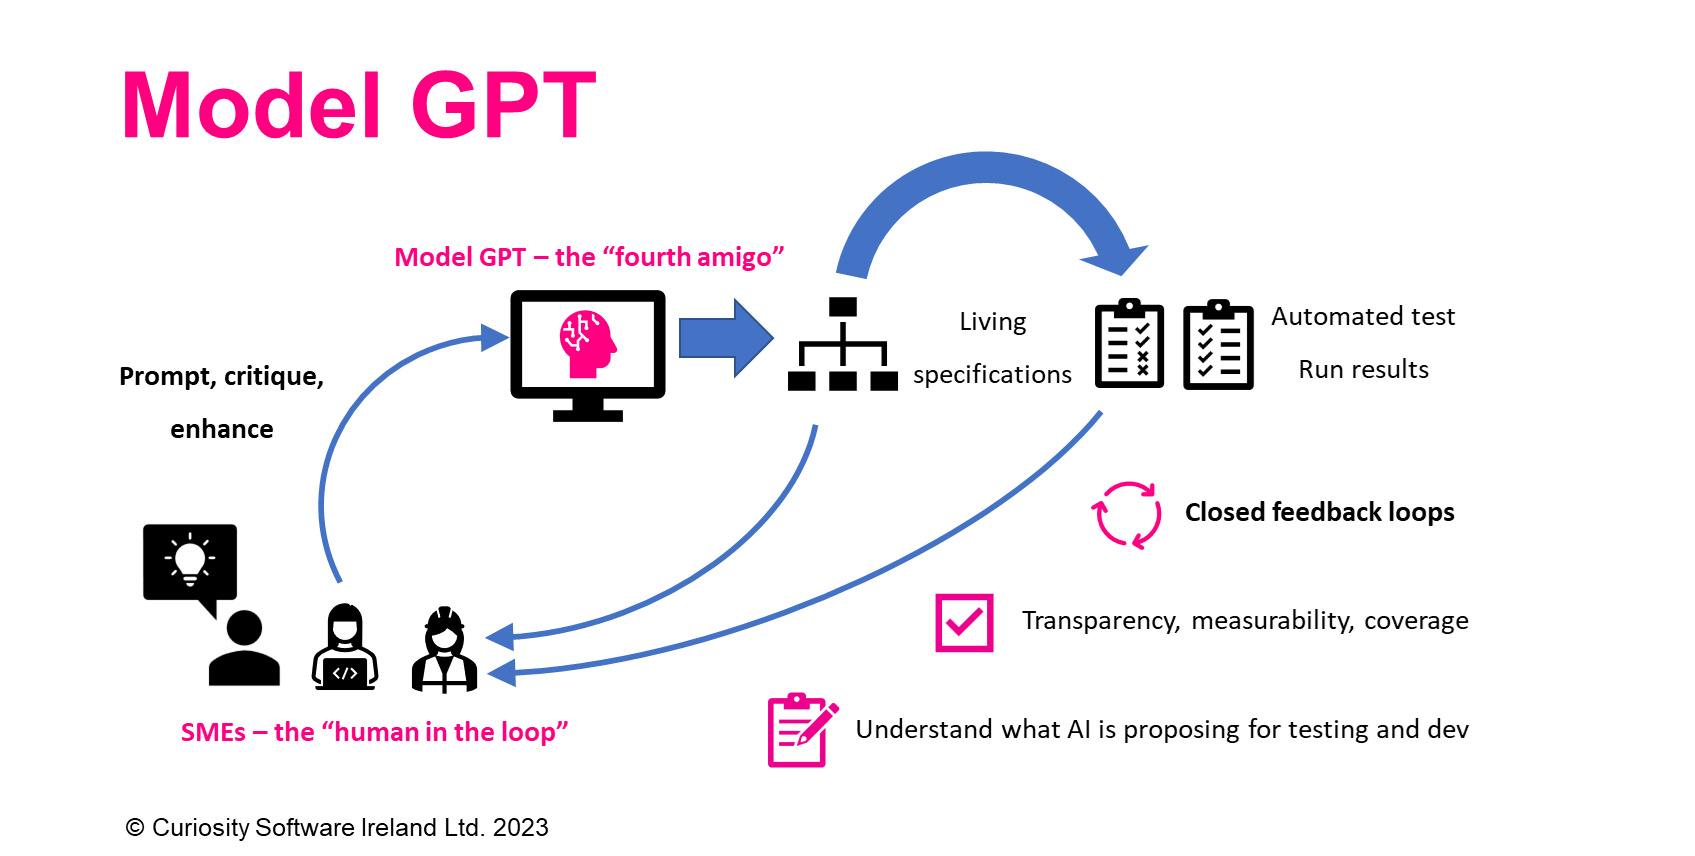 Model GPT